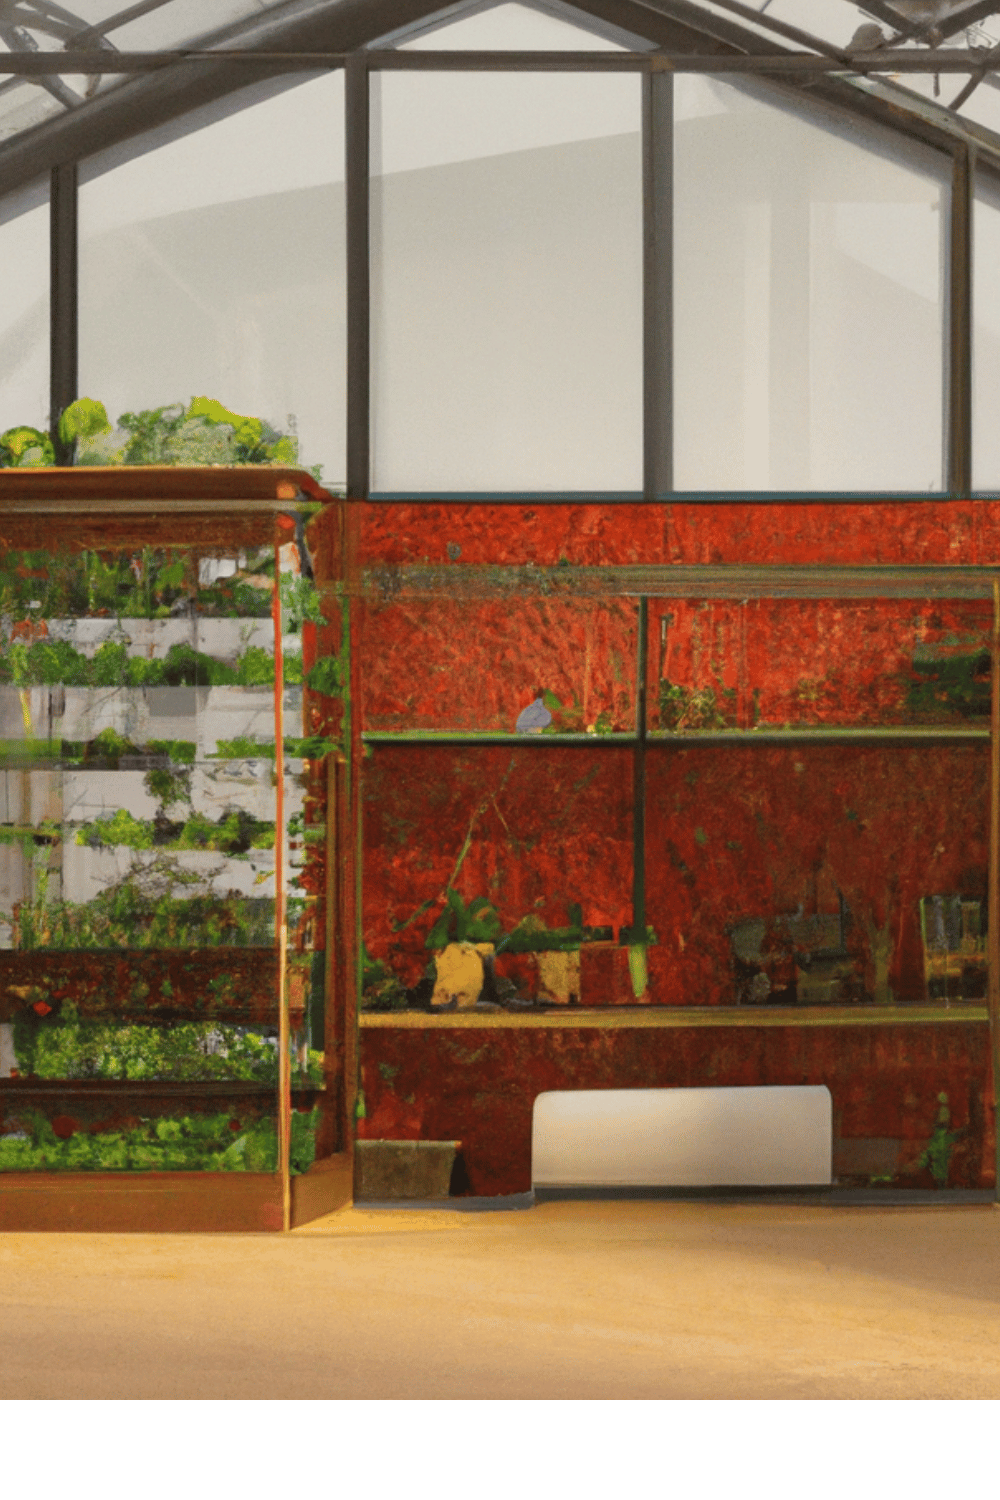 Indoor Greenhouse